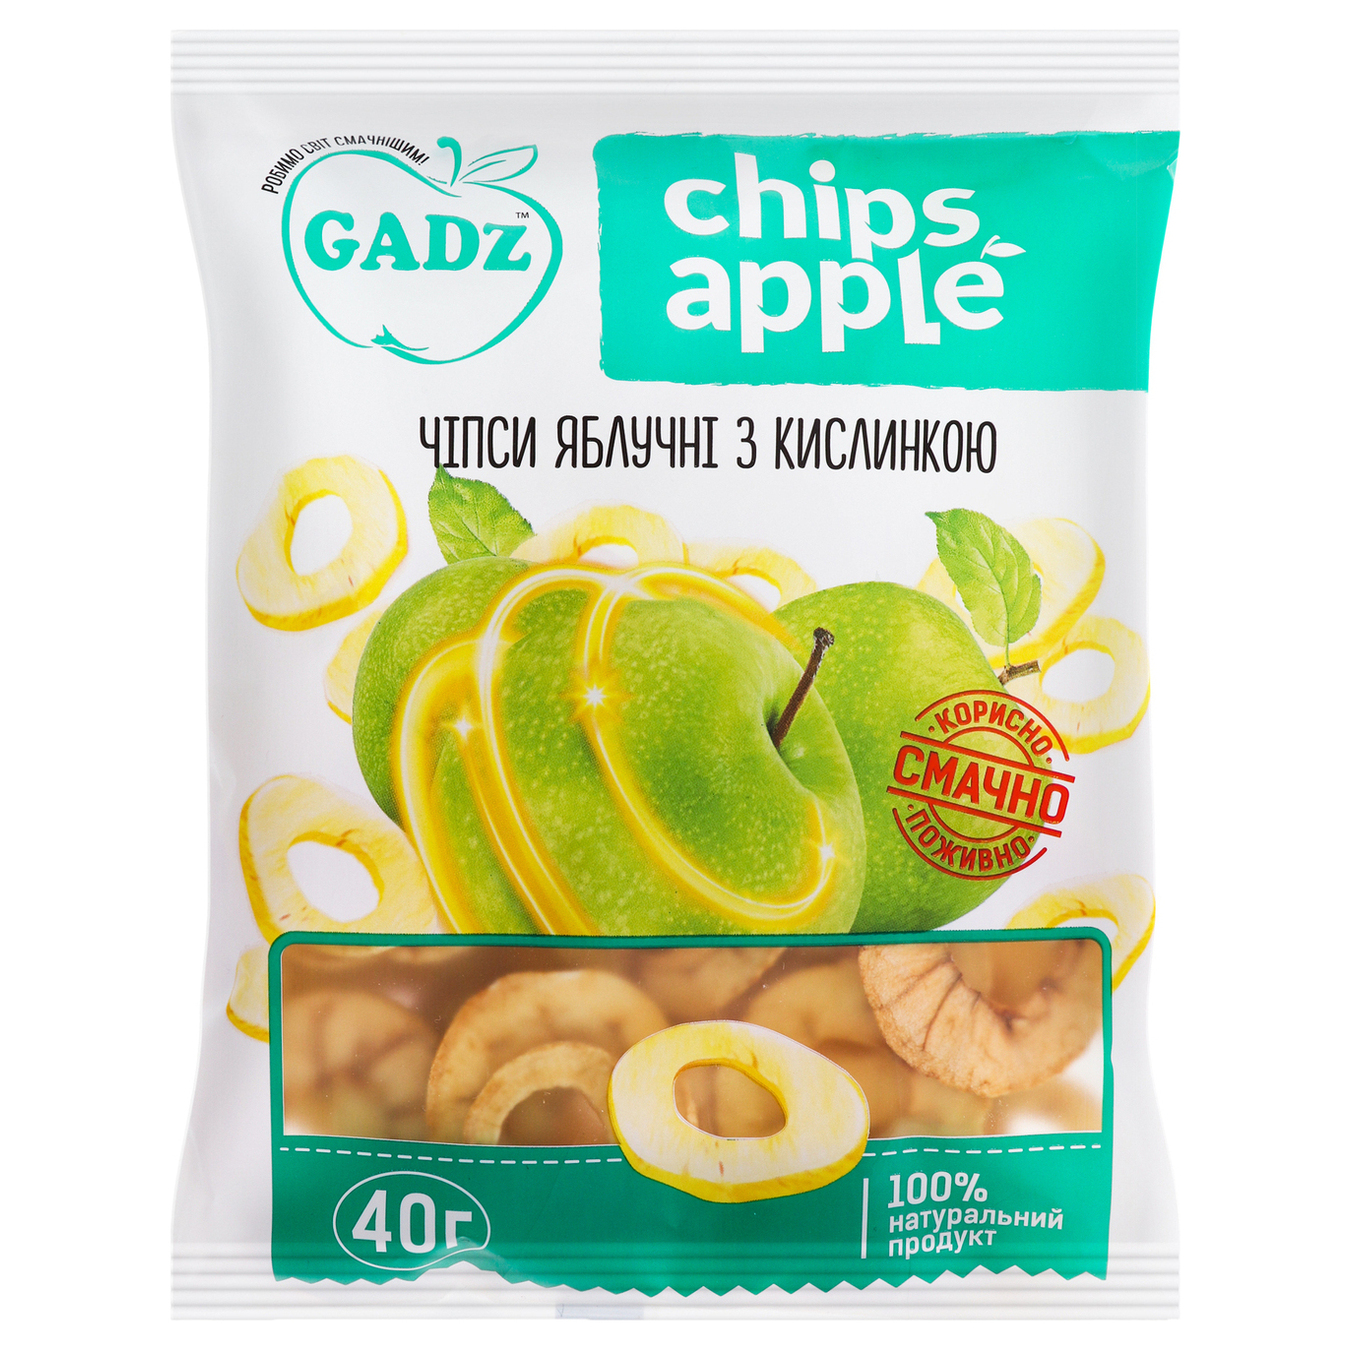 Чіпси Gadz яблучні з кислинкою 40г